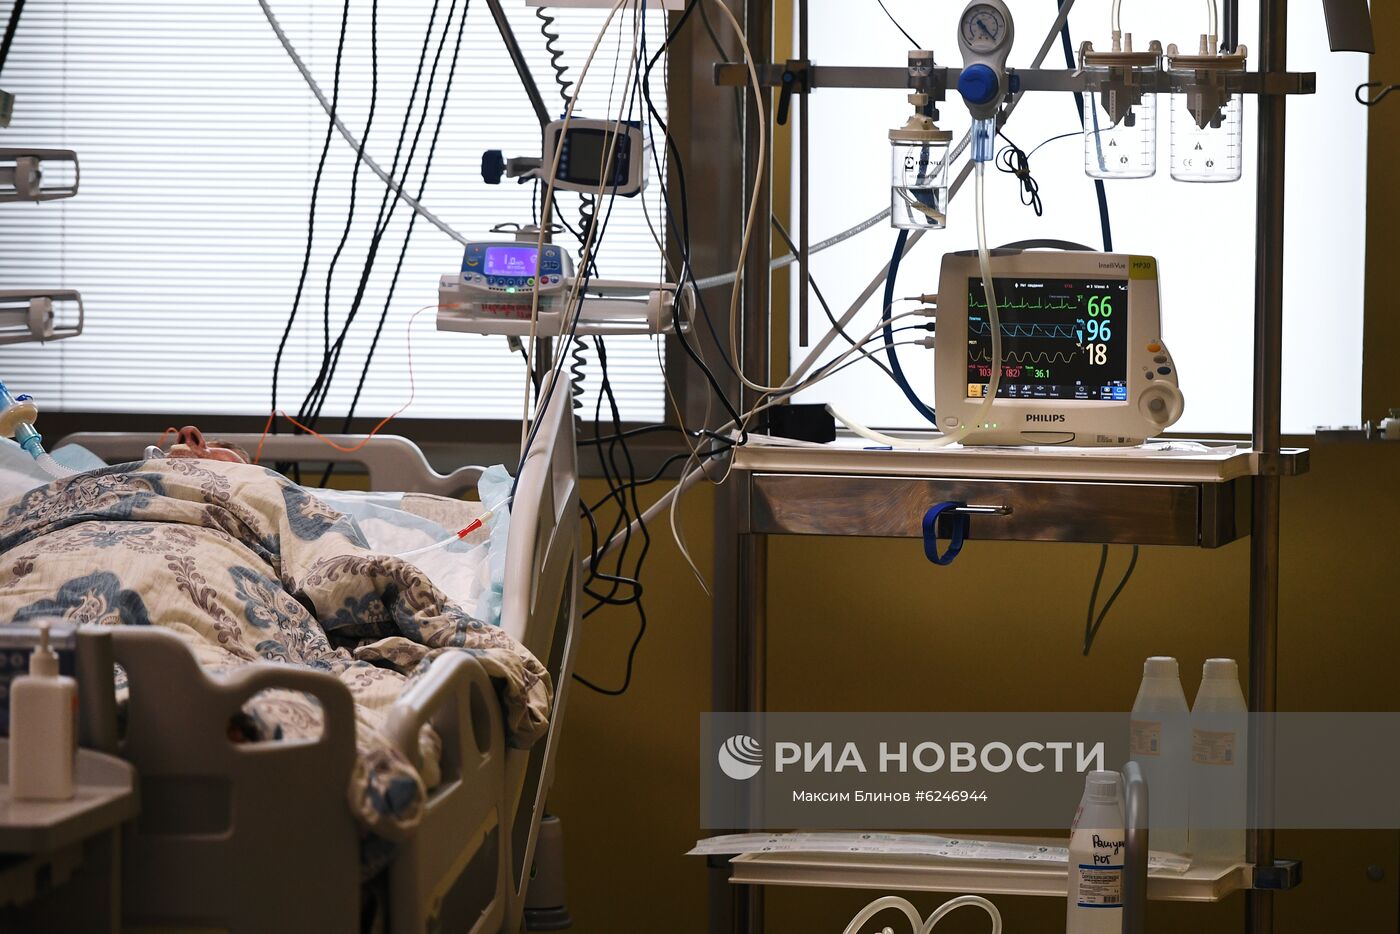 Госпиталь COVID-19 в Центре мозга и нейротехнологий ФМБА России